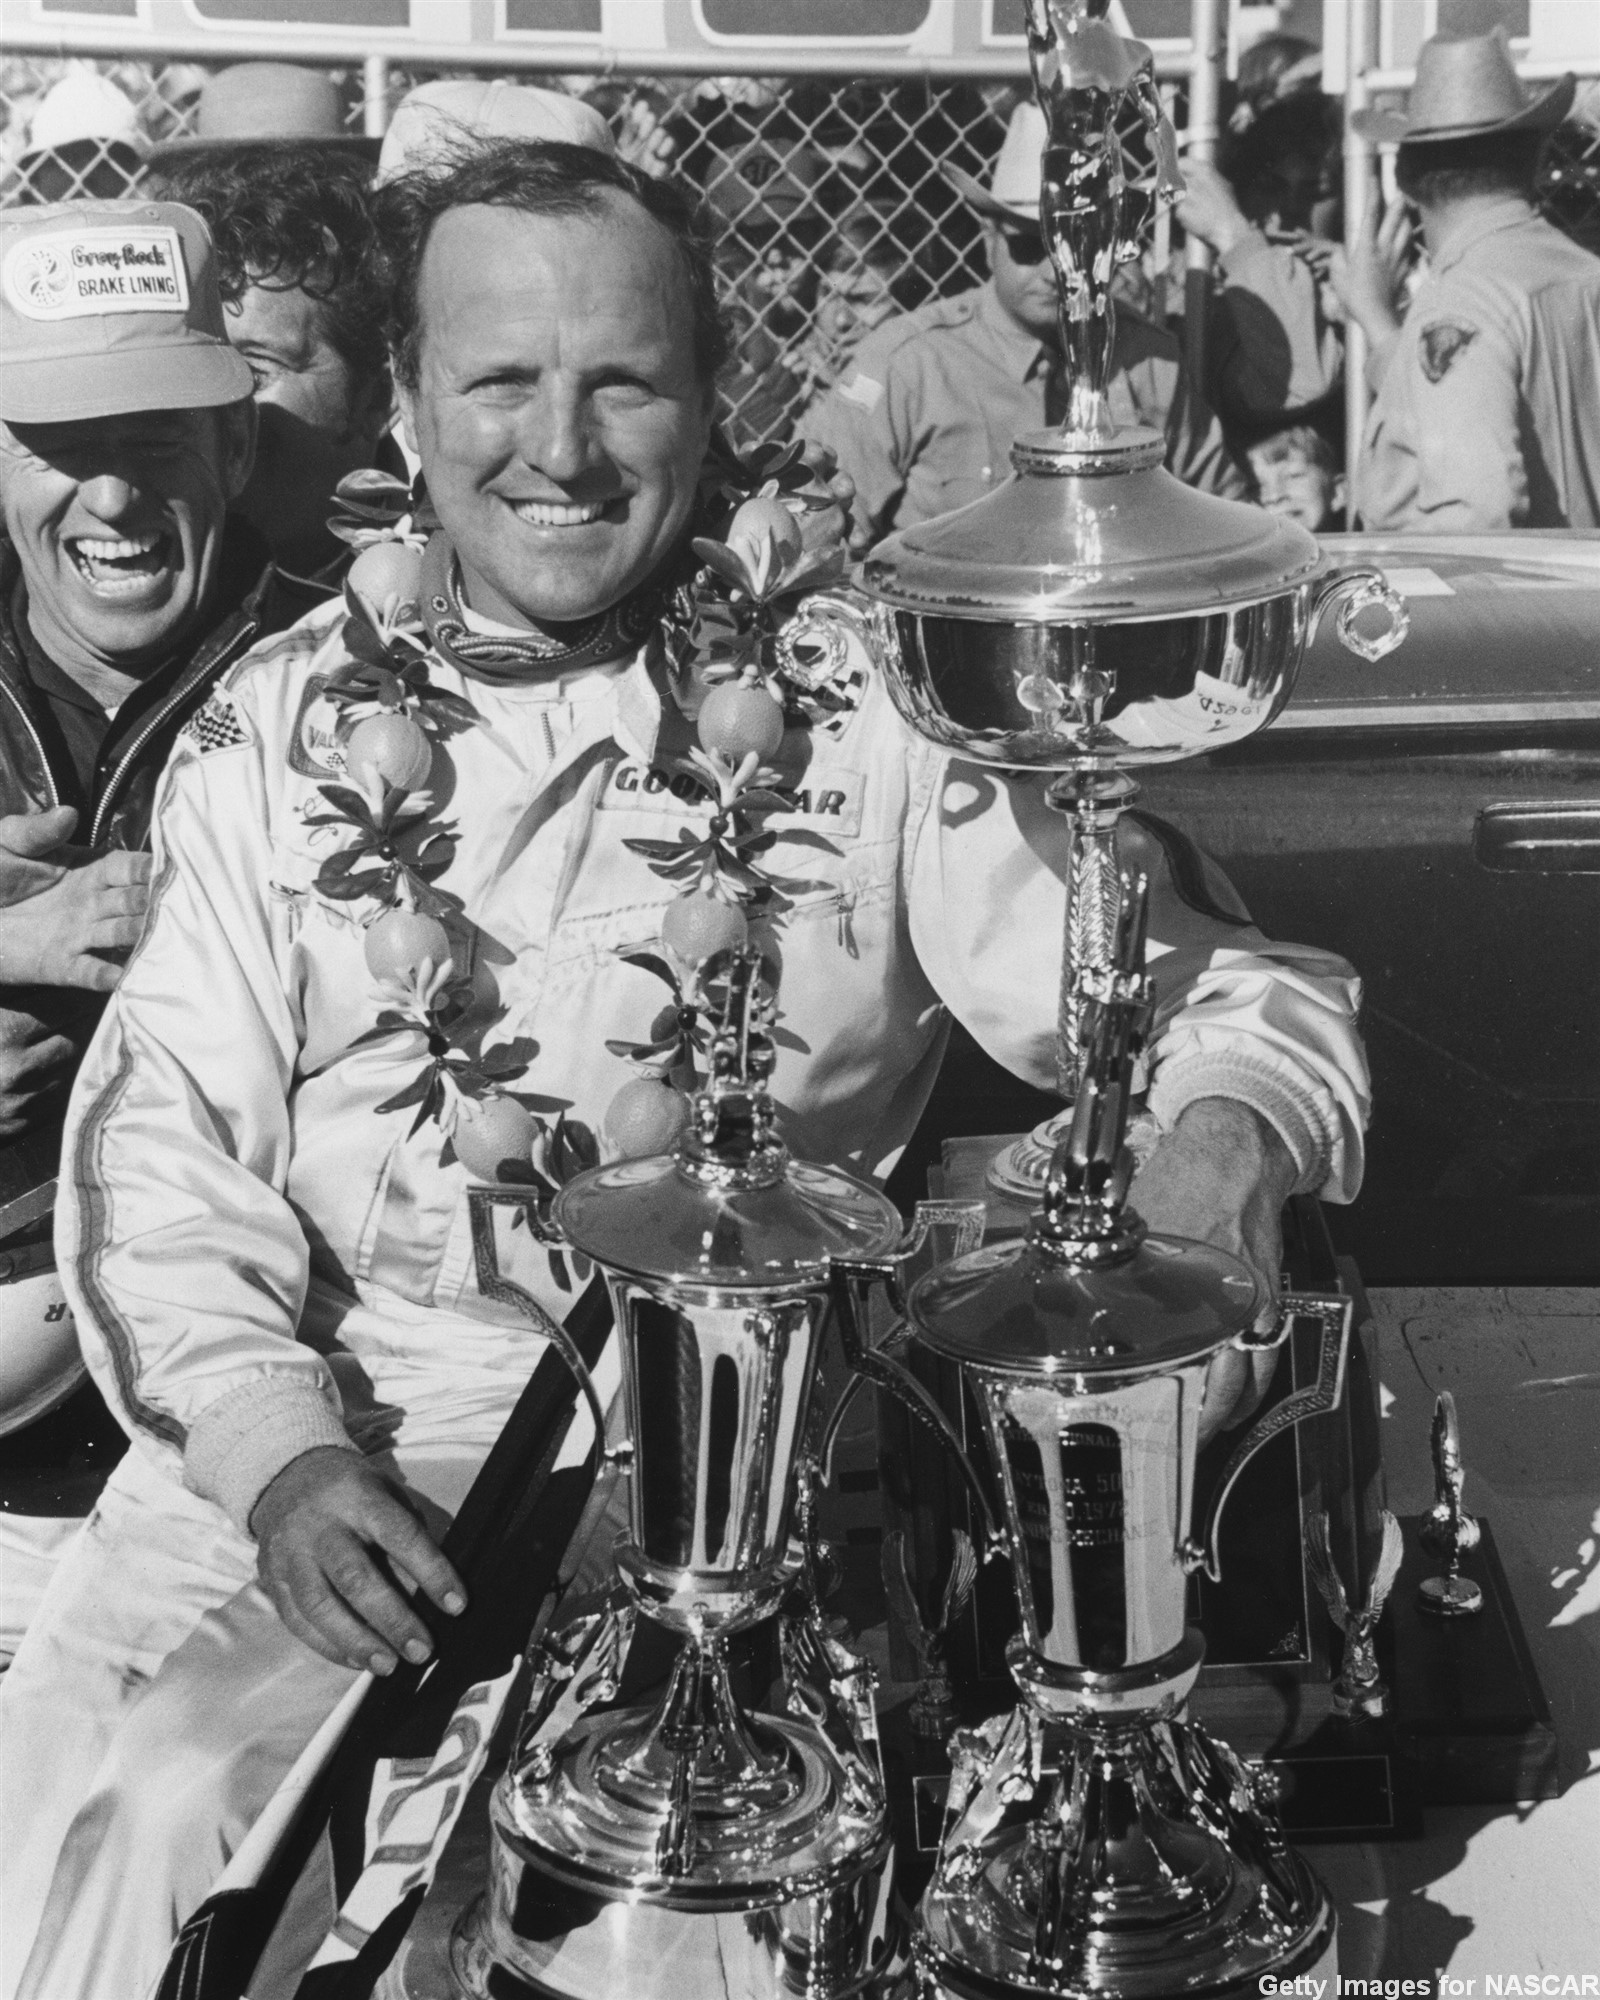 AJ Foyt winning Daytona in 1972